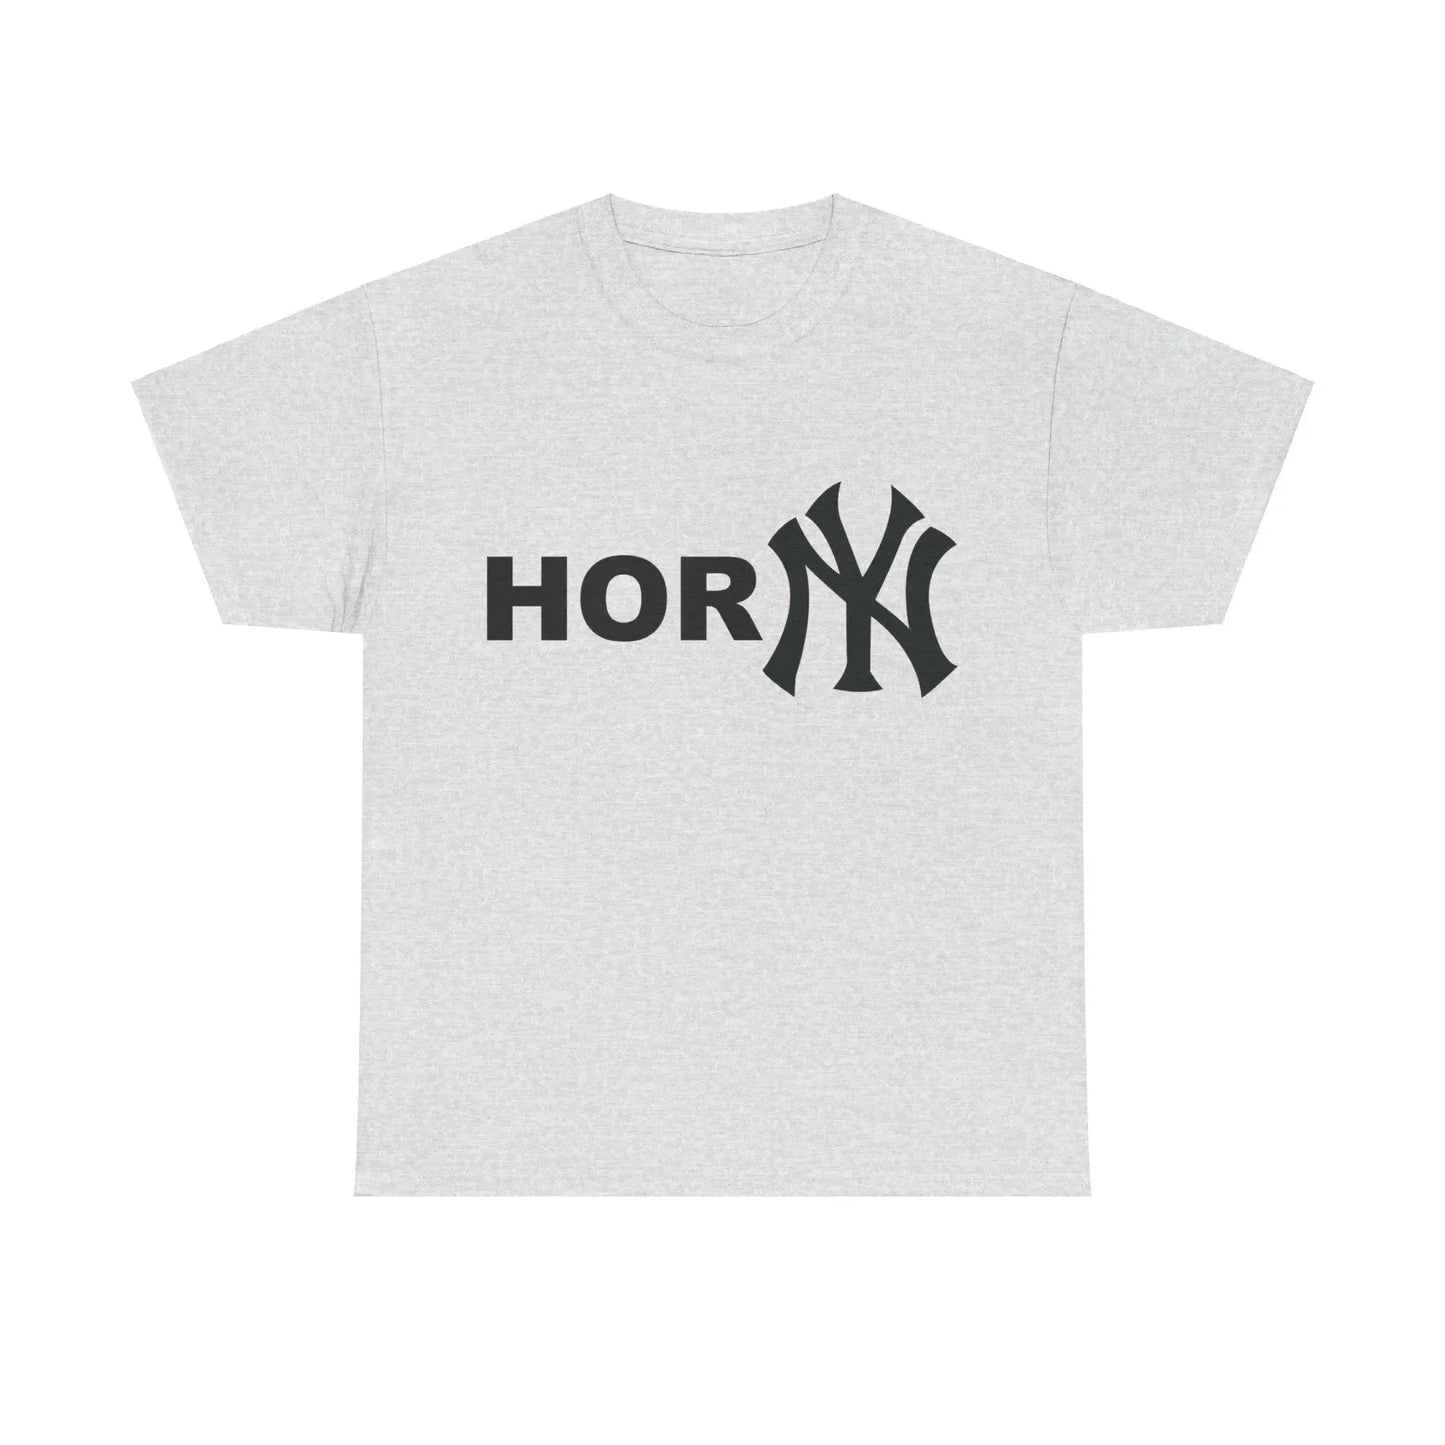 Hor NY (Horny New York Yankees) T-Shirt - Failure International failureinternational.com store brand tiktok instagram